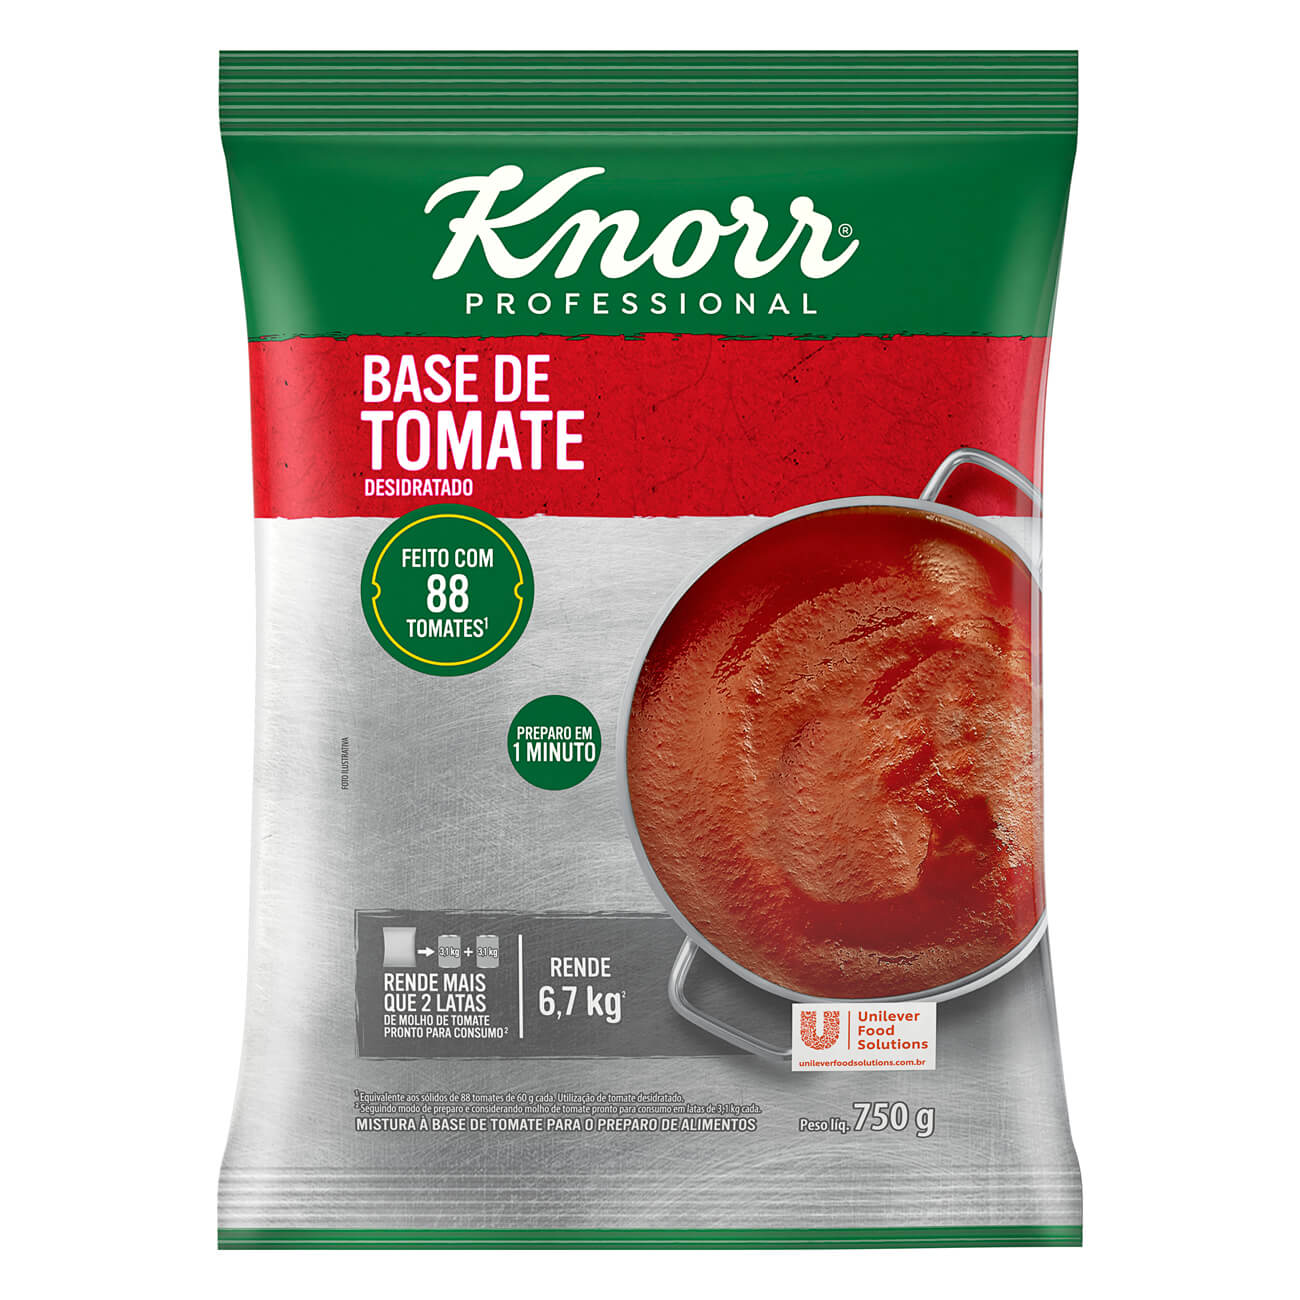 Base de Tomate Knorr Desidratado Pacote 750g